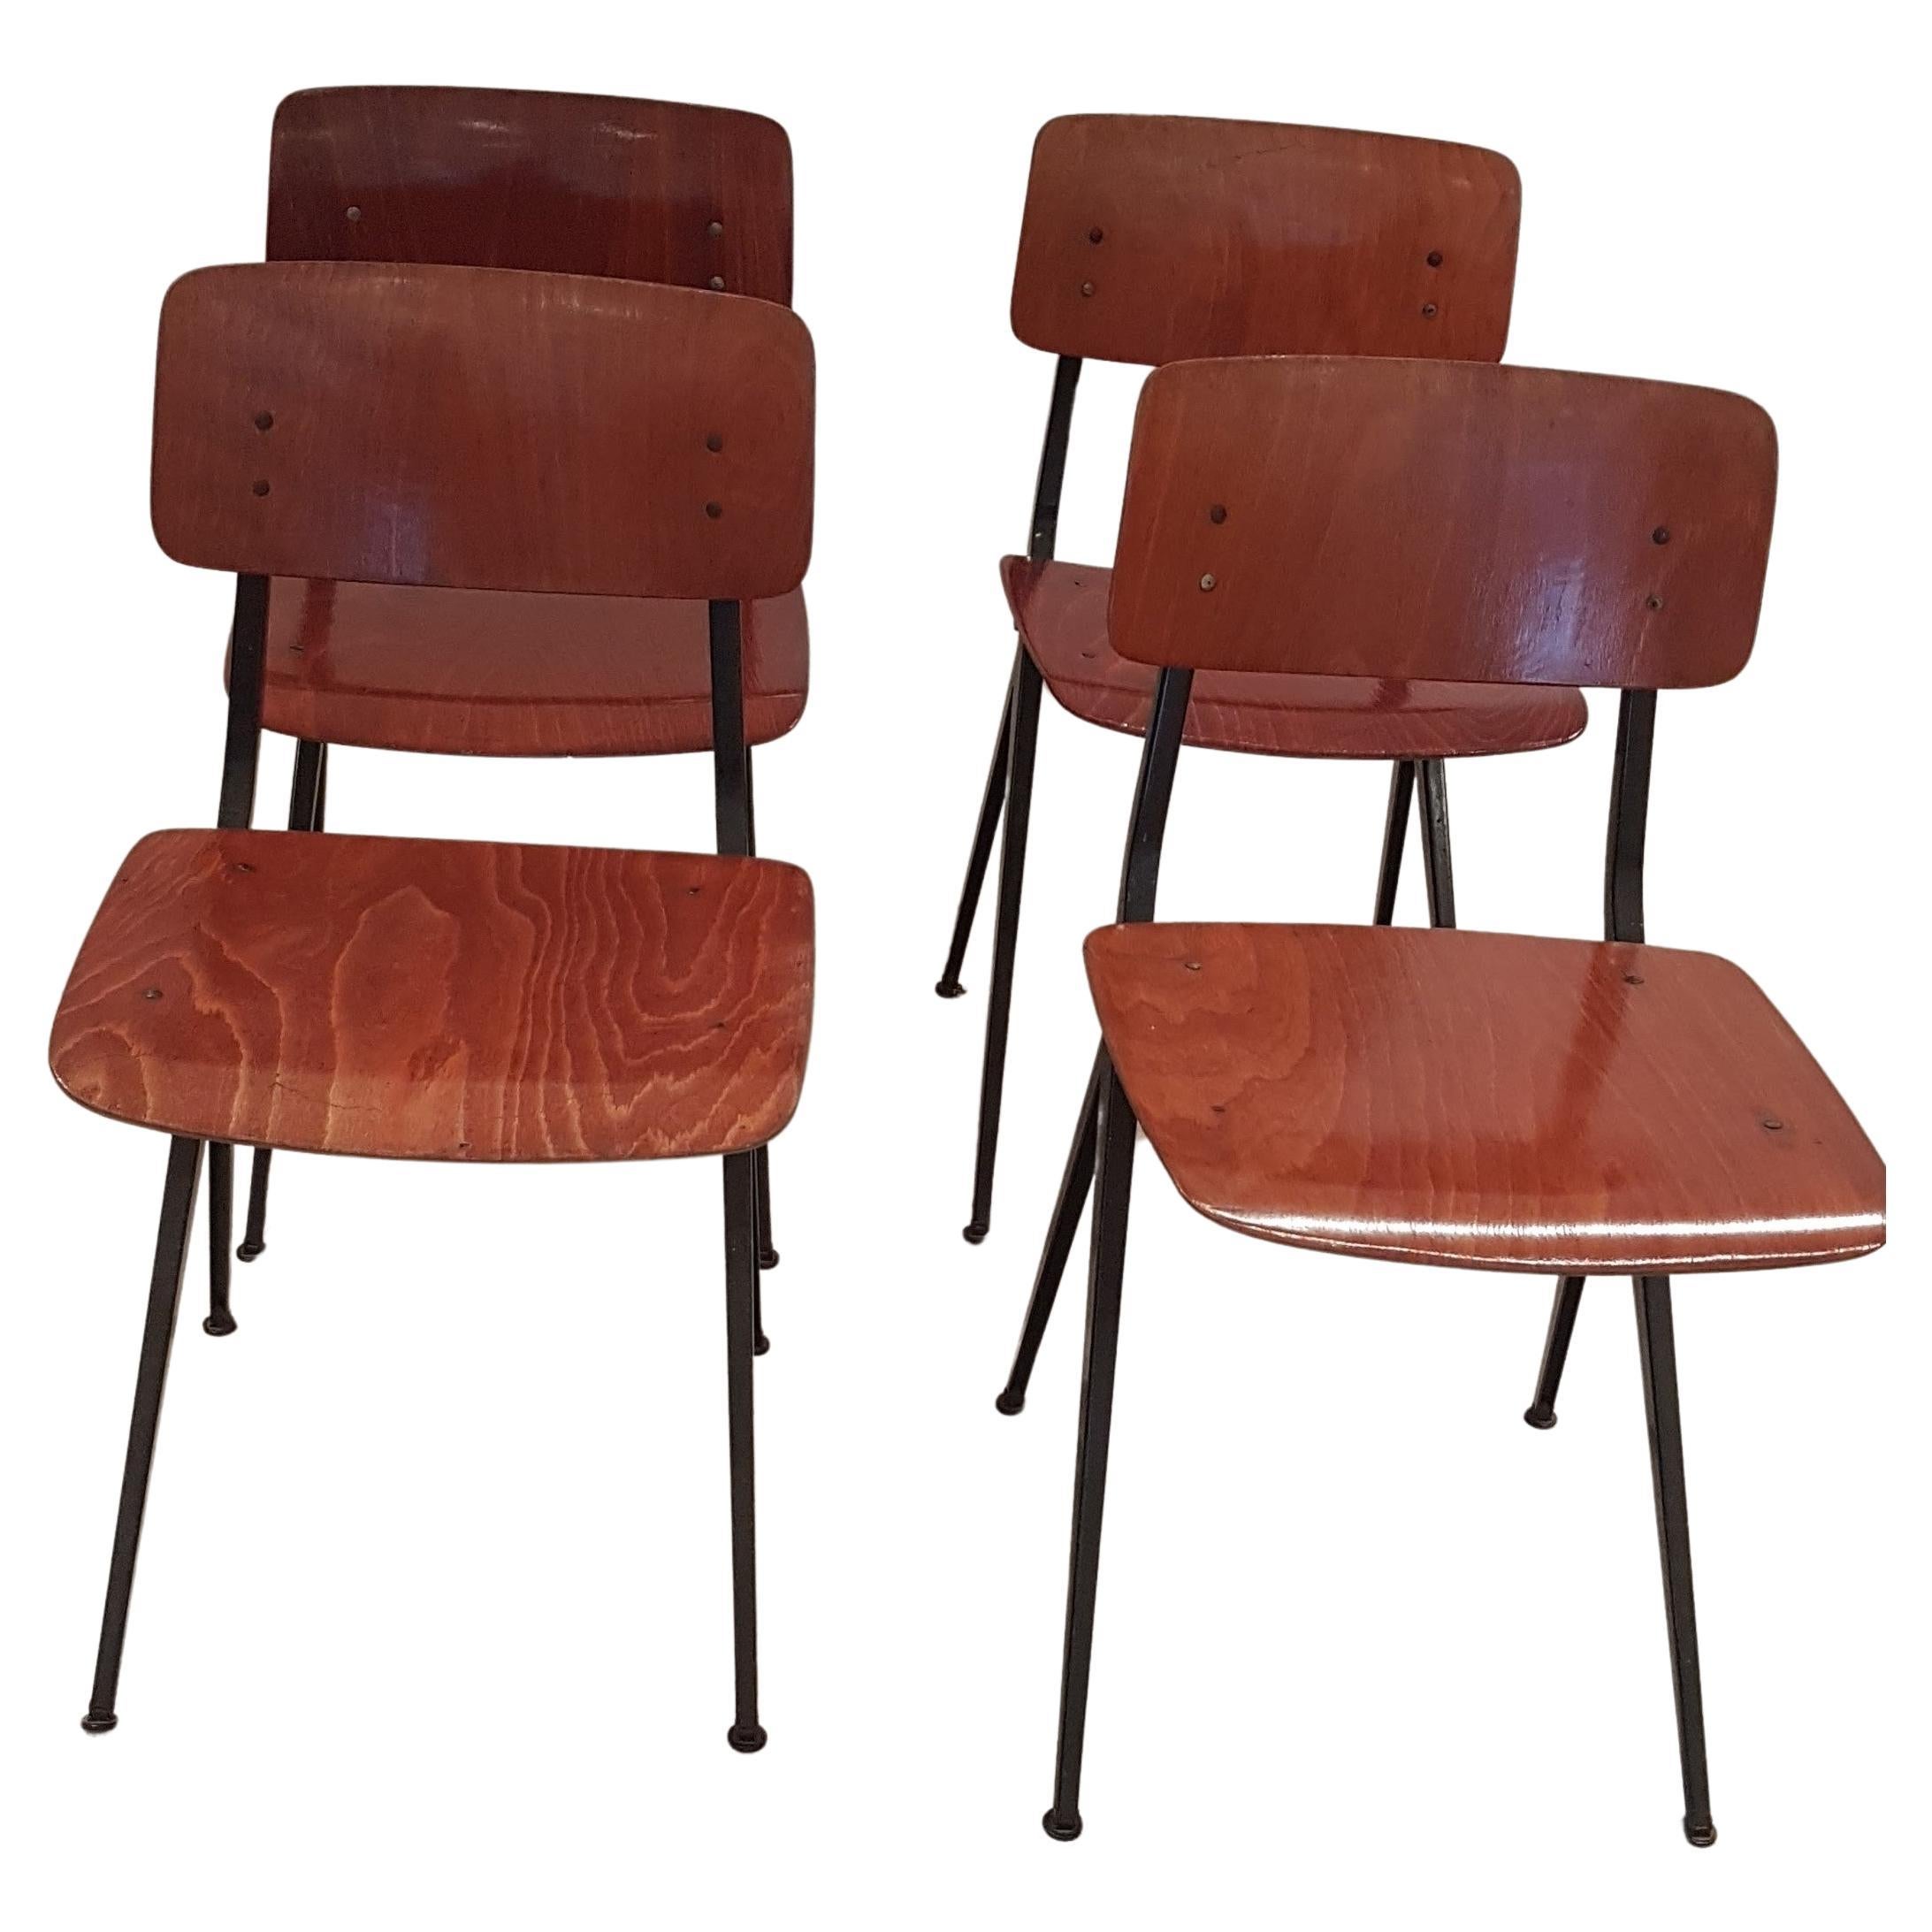 Ensemble de quatre chaises de style industriel par Marko Holland. Ces chaises utilitaires confortables ont de belles assises et dossiers en teck vieilli et des piétements minimalistes en métal laqué noir. Leur simplicité leur permet de s'intégrer